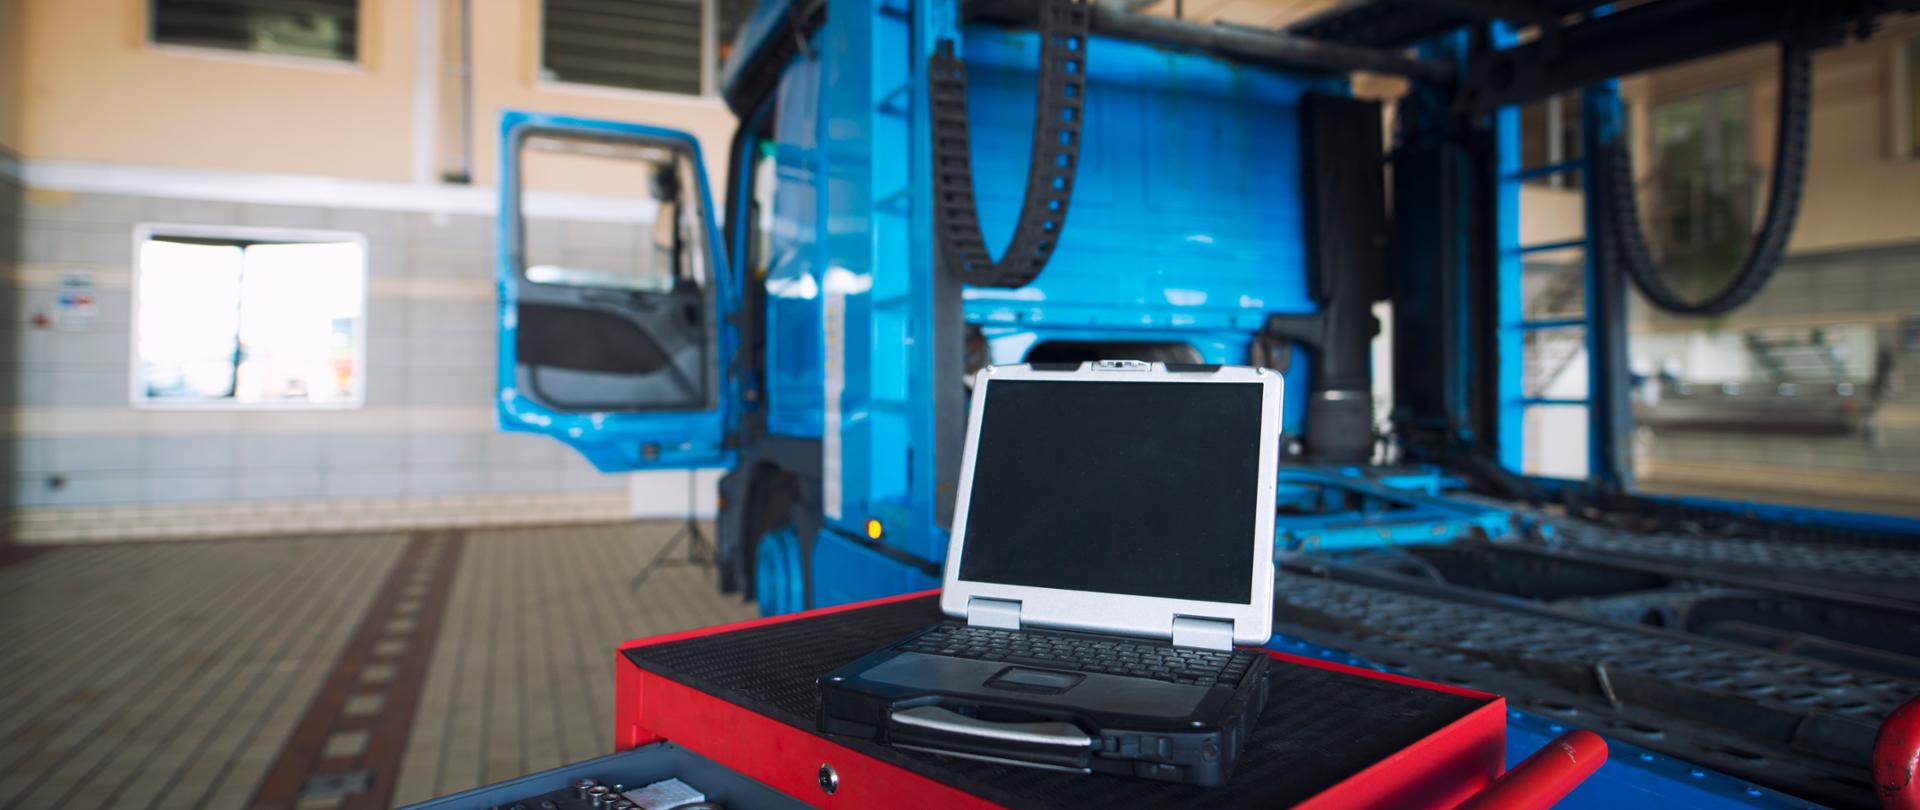 Wnętrze warsztatu, ciężarówka, wózek narzędziowy i narzędziem diagnostycznym do obsługi pojazdów ciężarowych. 